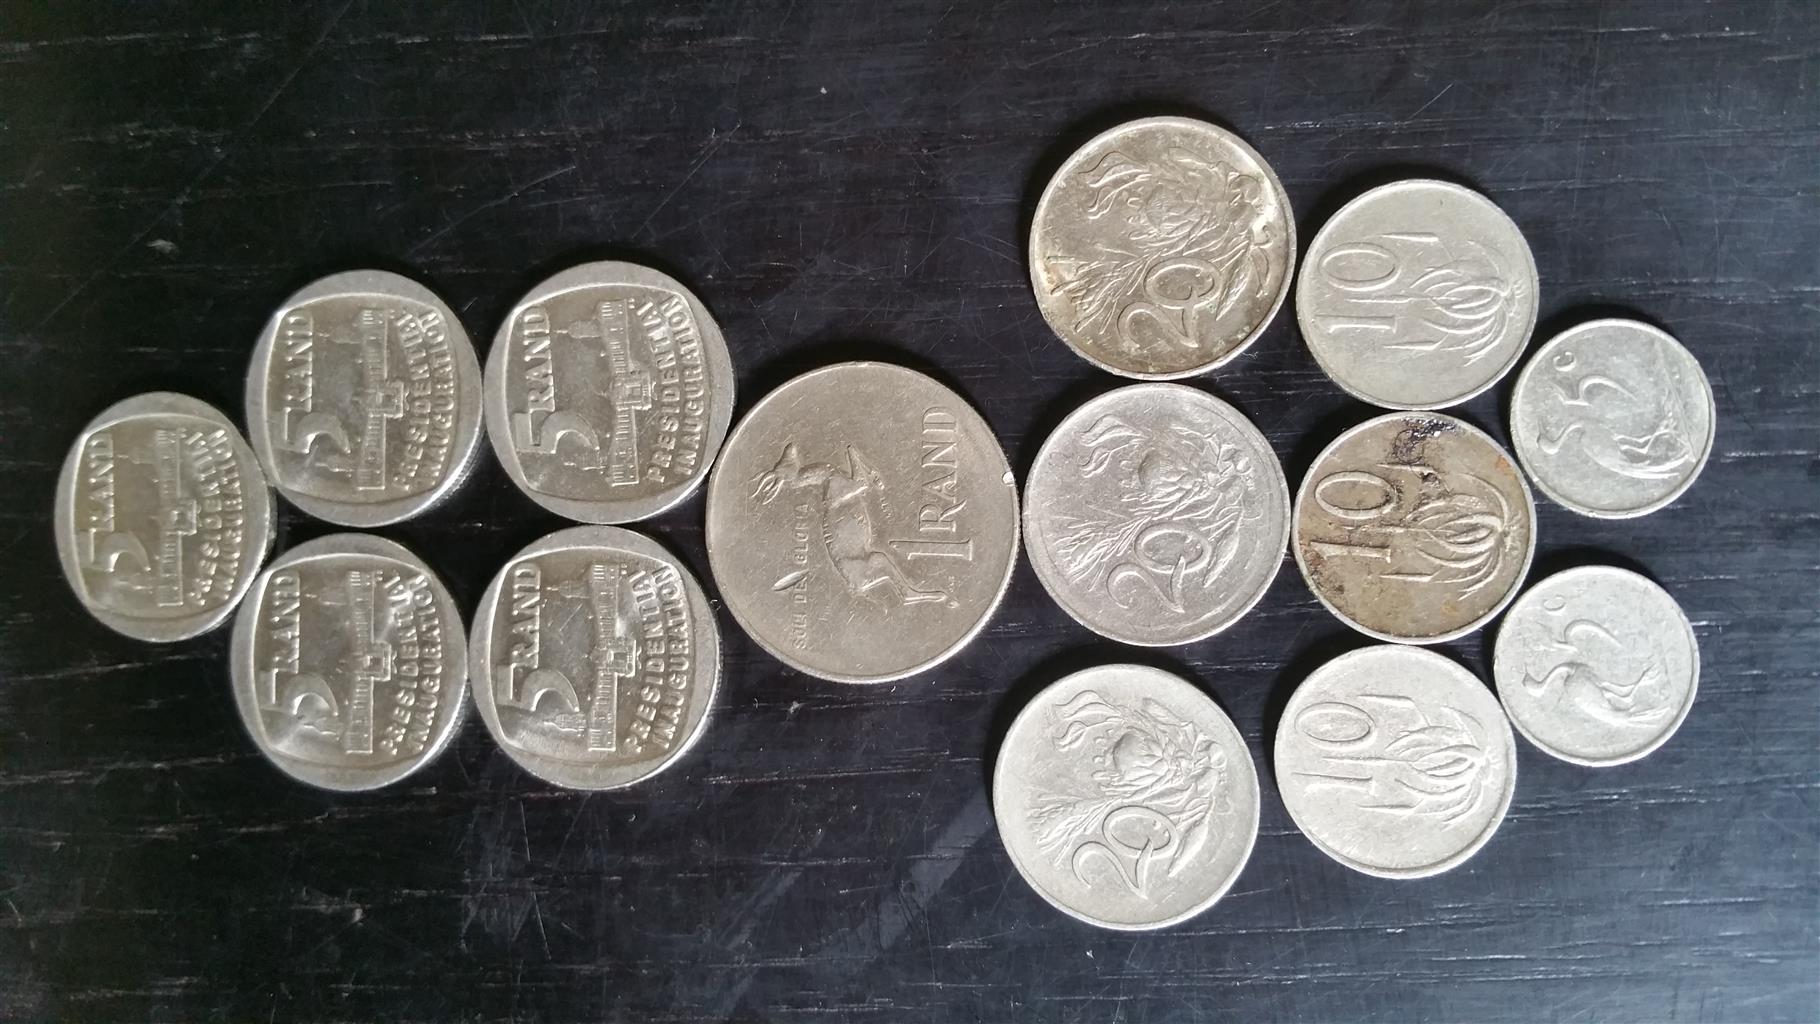 Nelson Mandela coins